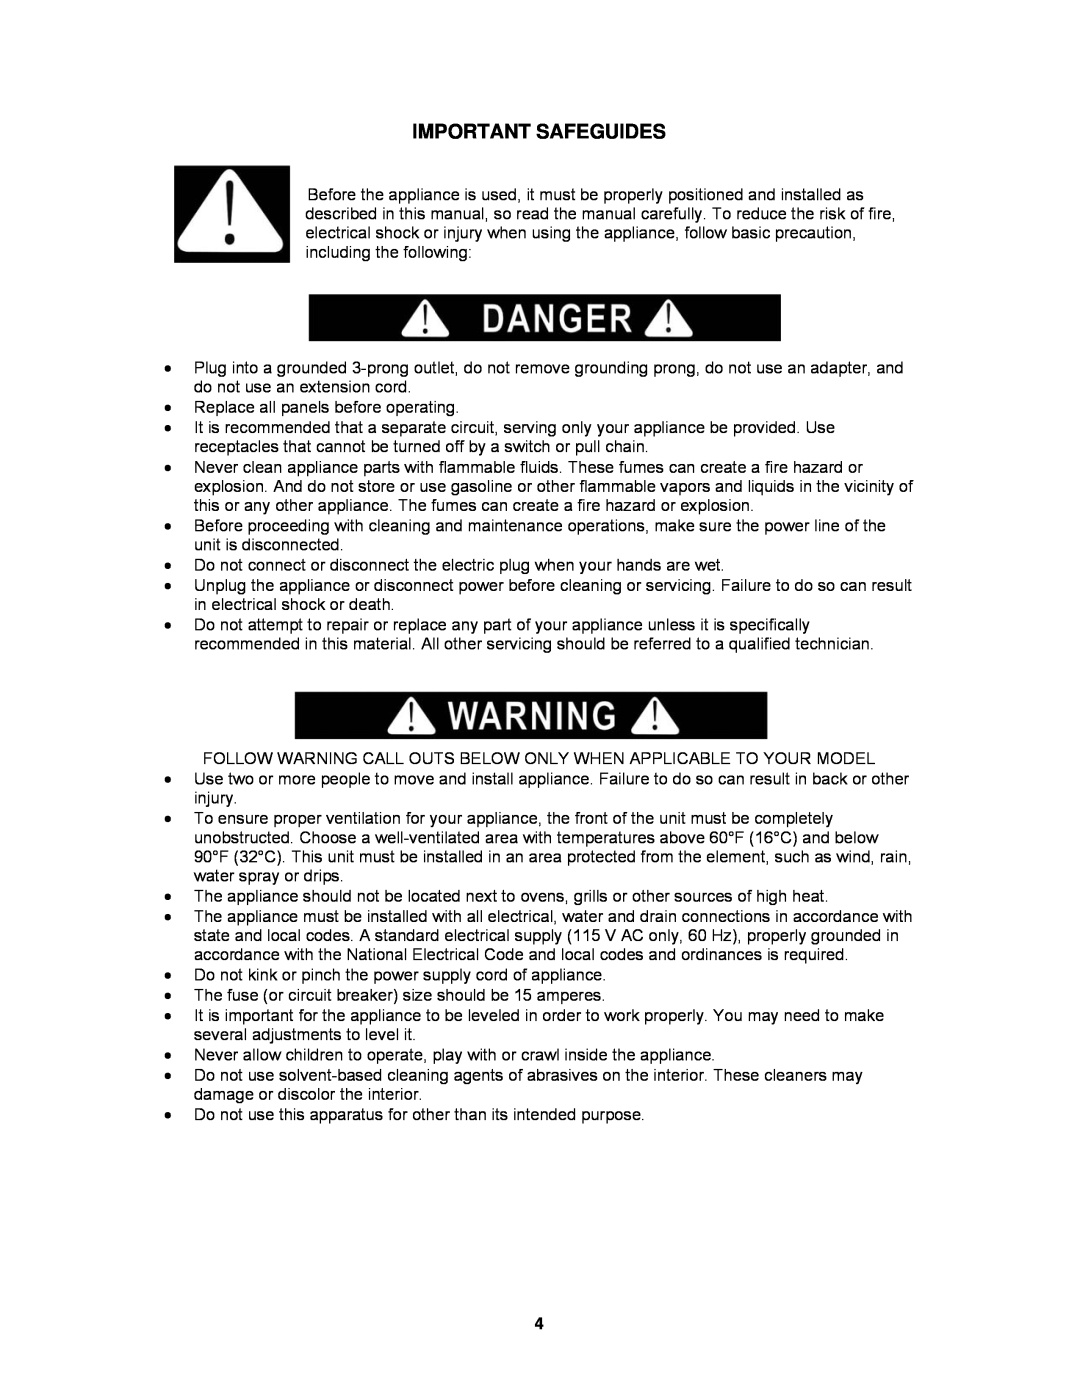 Avanti WCR4600S instruction manual Important Safeguides 